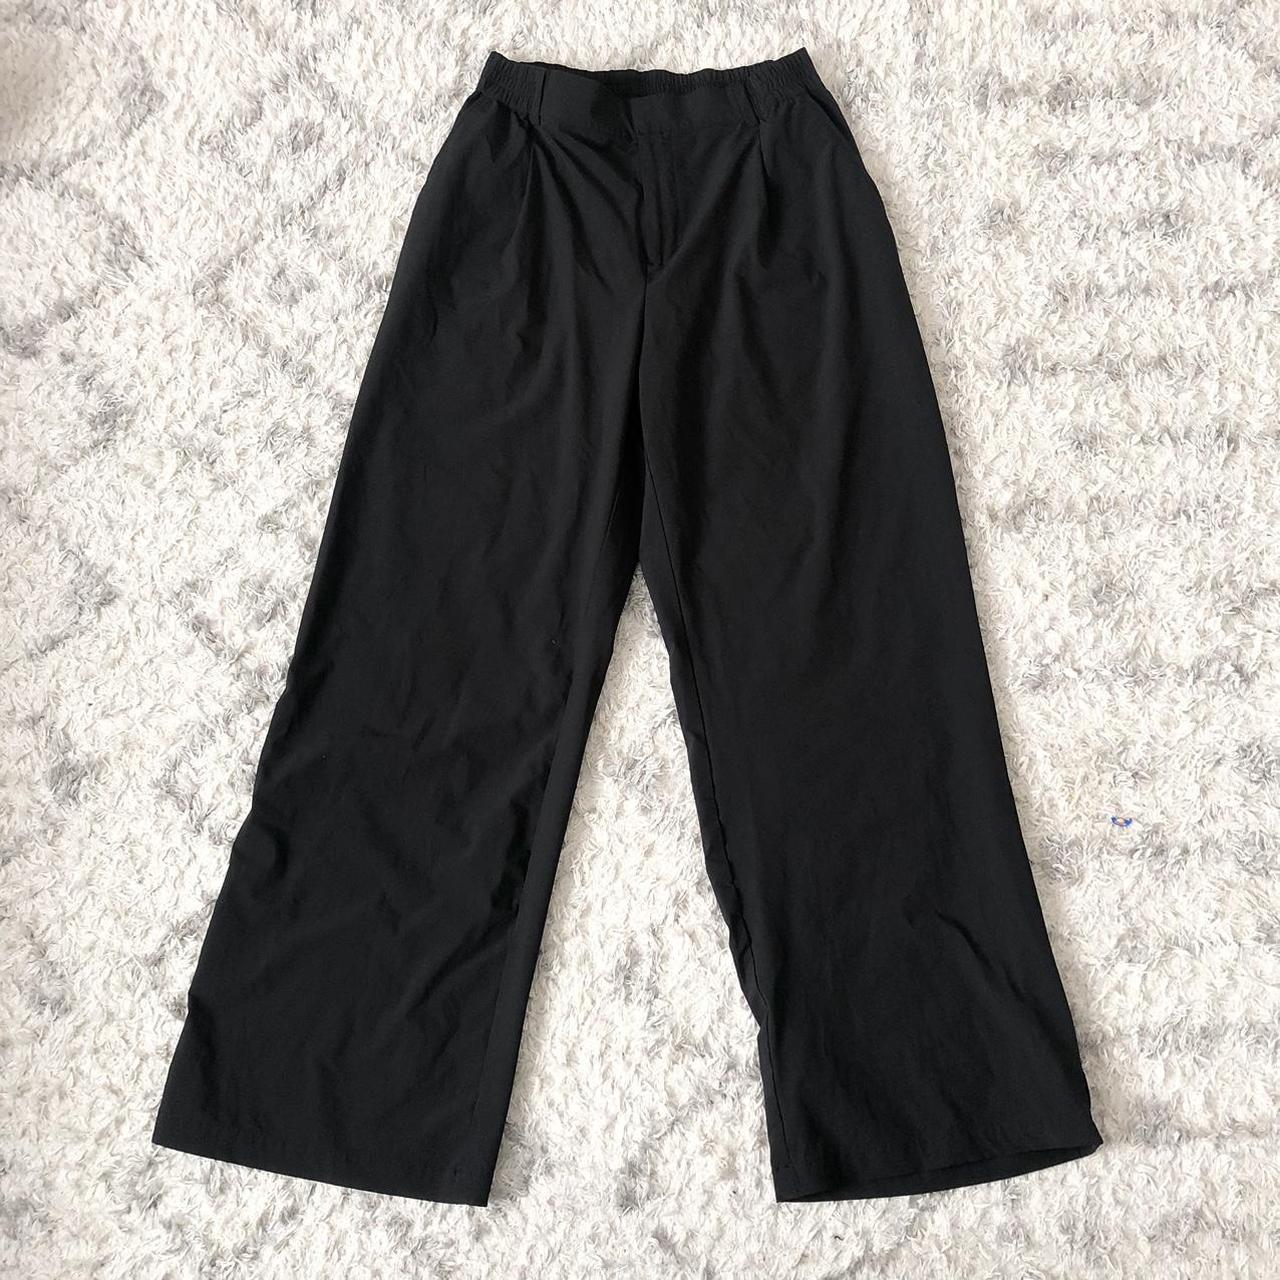 Alo Yoga High-Waist Pursuit Trouser Black M, No size